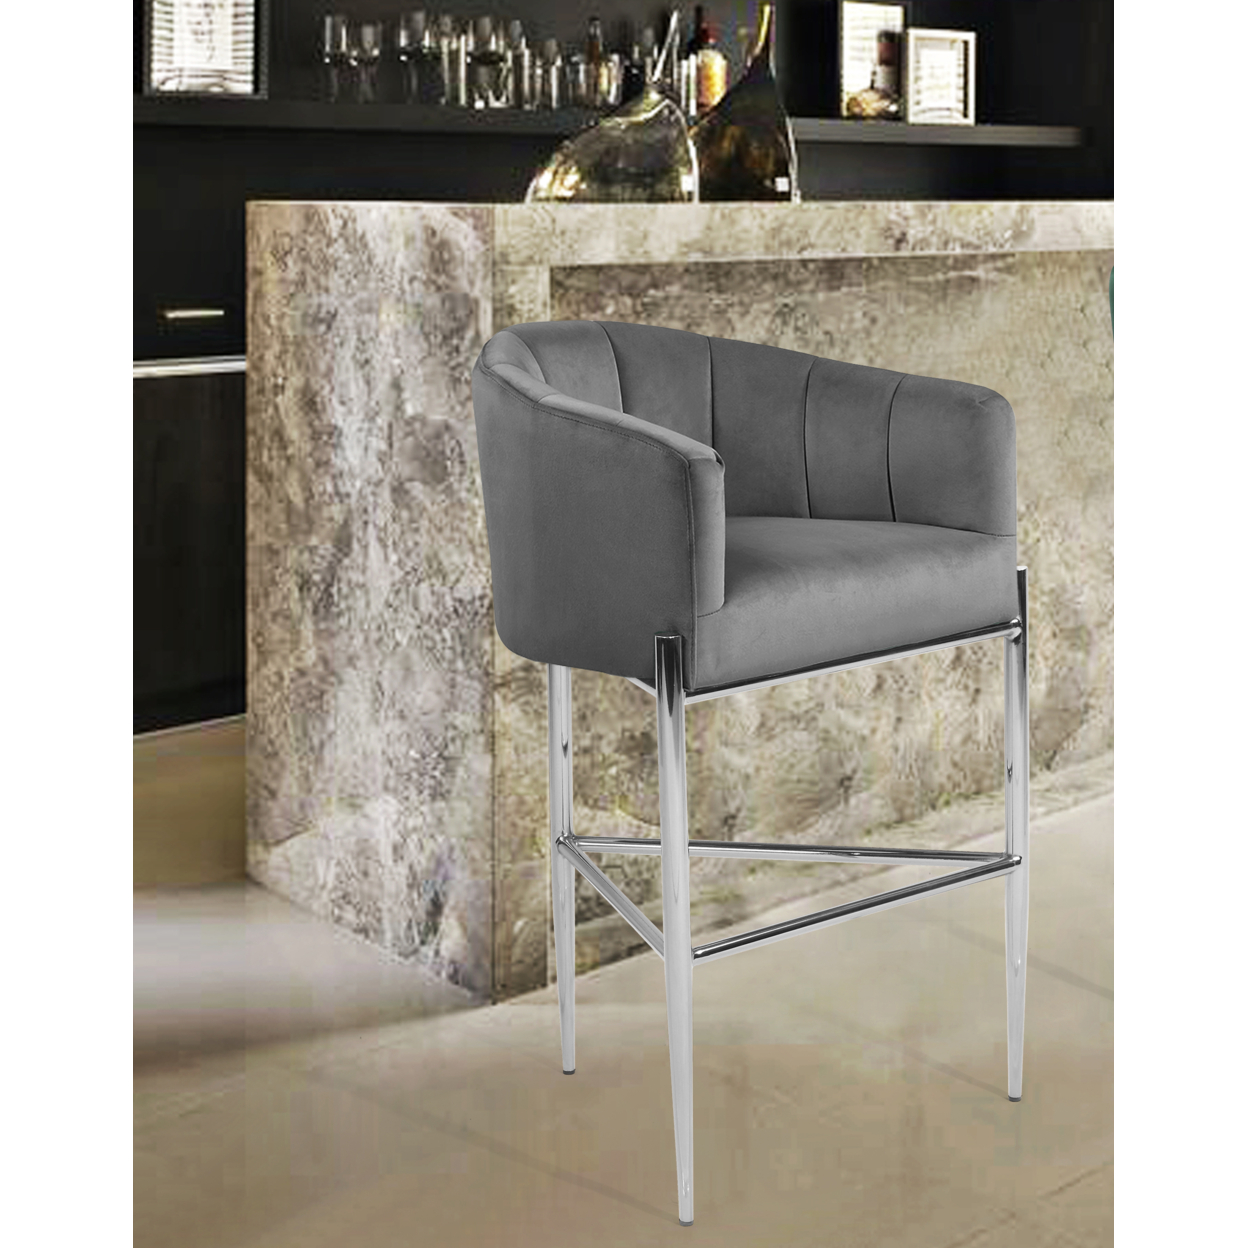 Iconic Home Ardee Bar Stool Chair Velvet Upholstered Shelter Arm Shell Design 3 Legged Chrome Tone Solid Metal Base - Silver